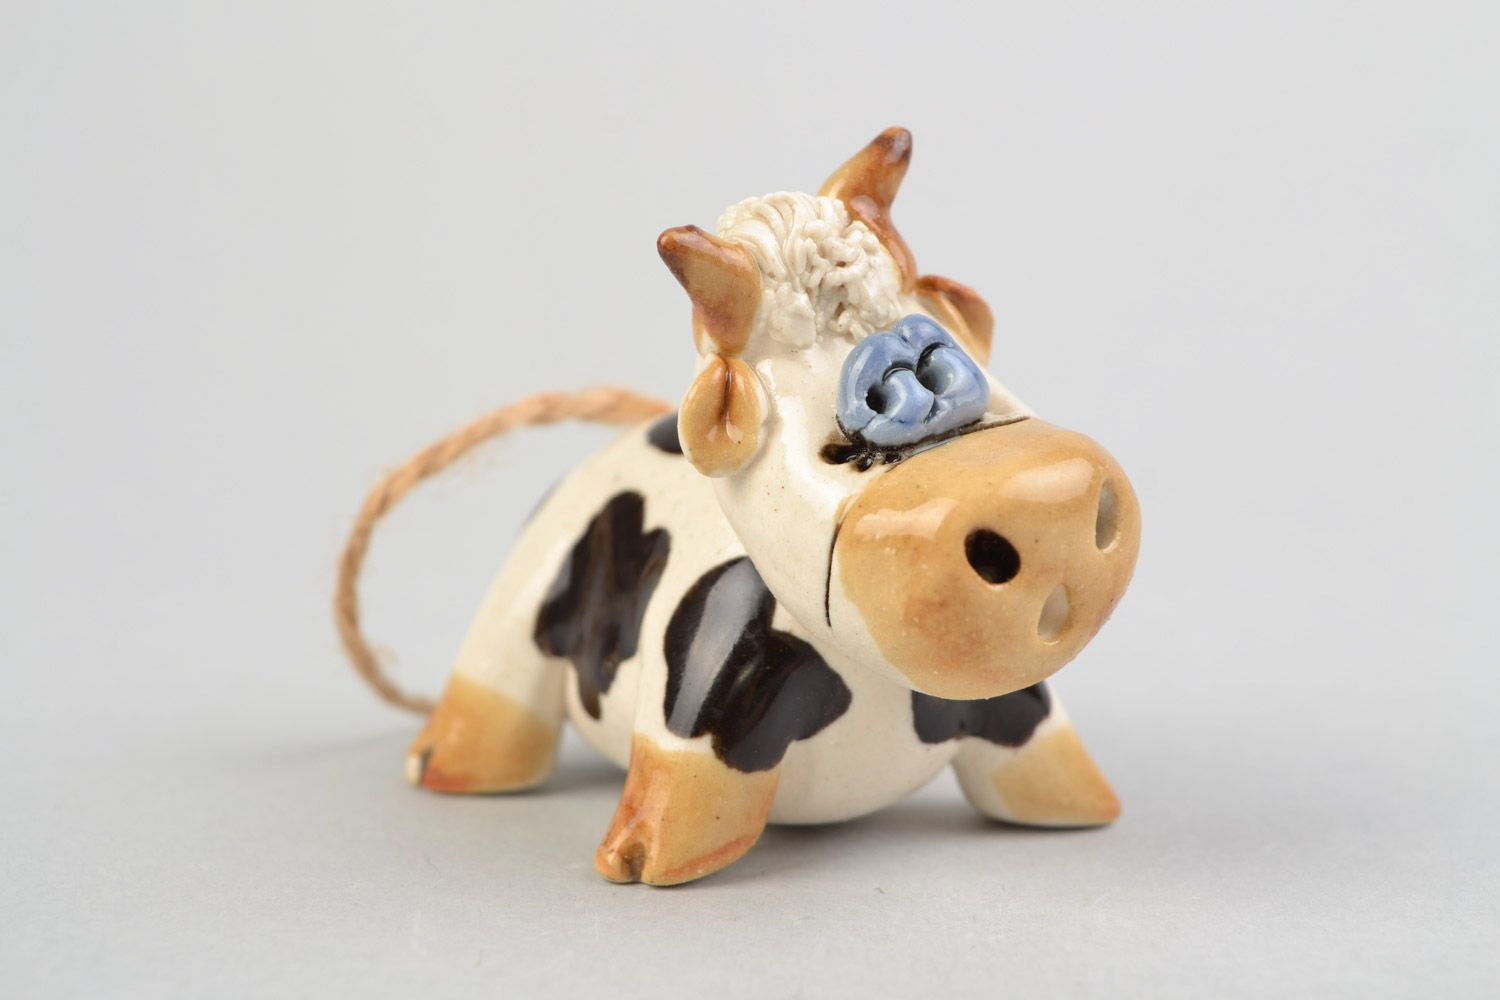 Забавная авторская расписанная глазурью глиняная фигурка коровки ручной работы фото 1